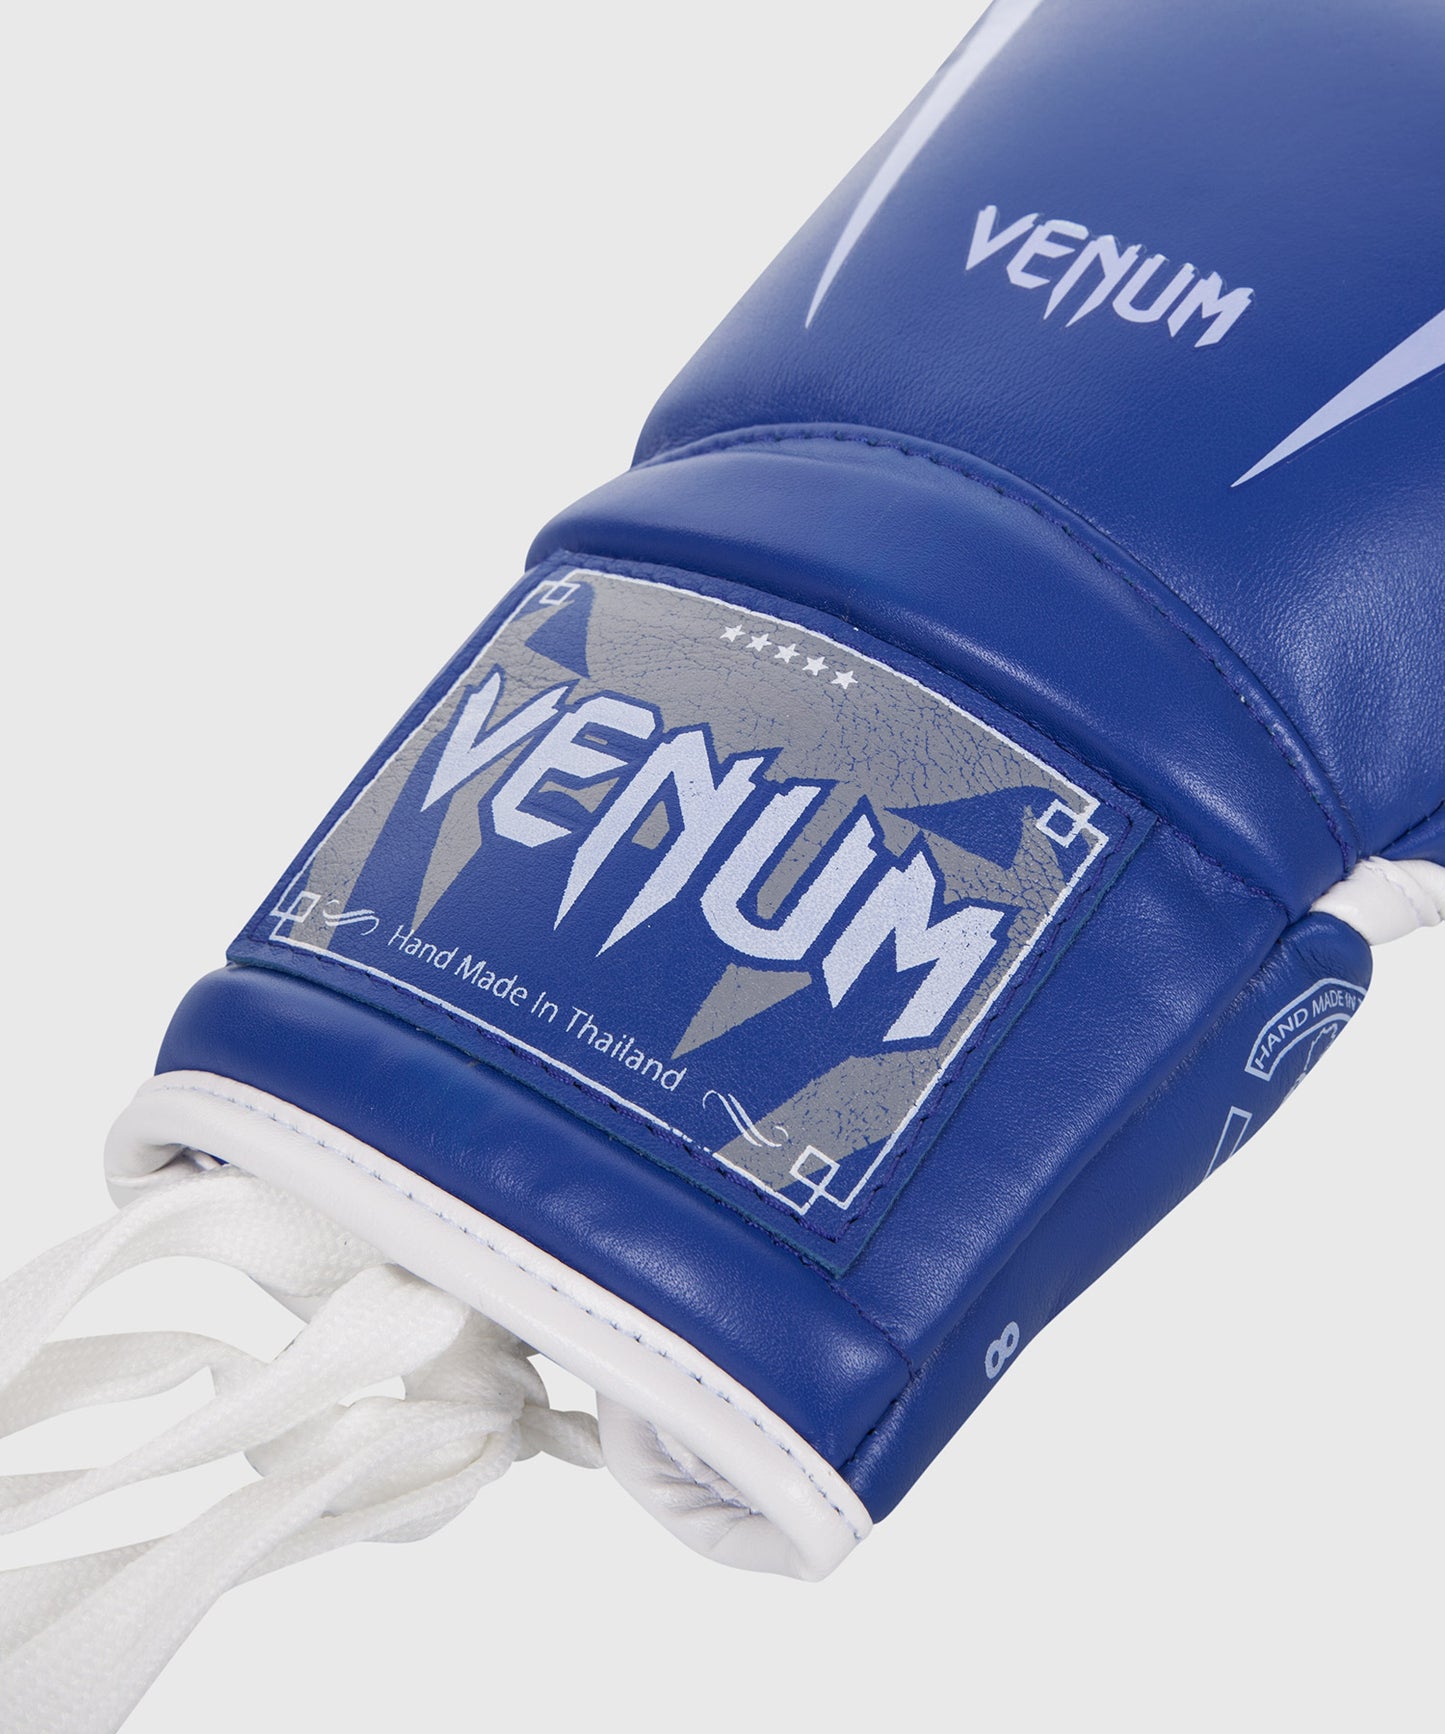 Venum Giant 3.0 Boxhandschuhe - Nappaleder - Mit Schnürung - Blau